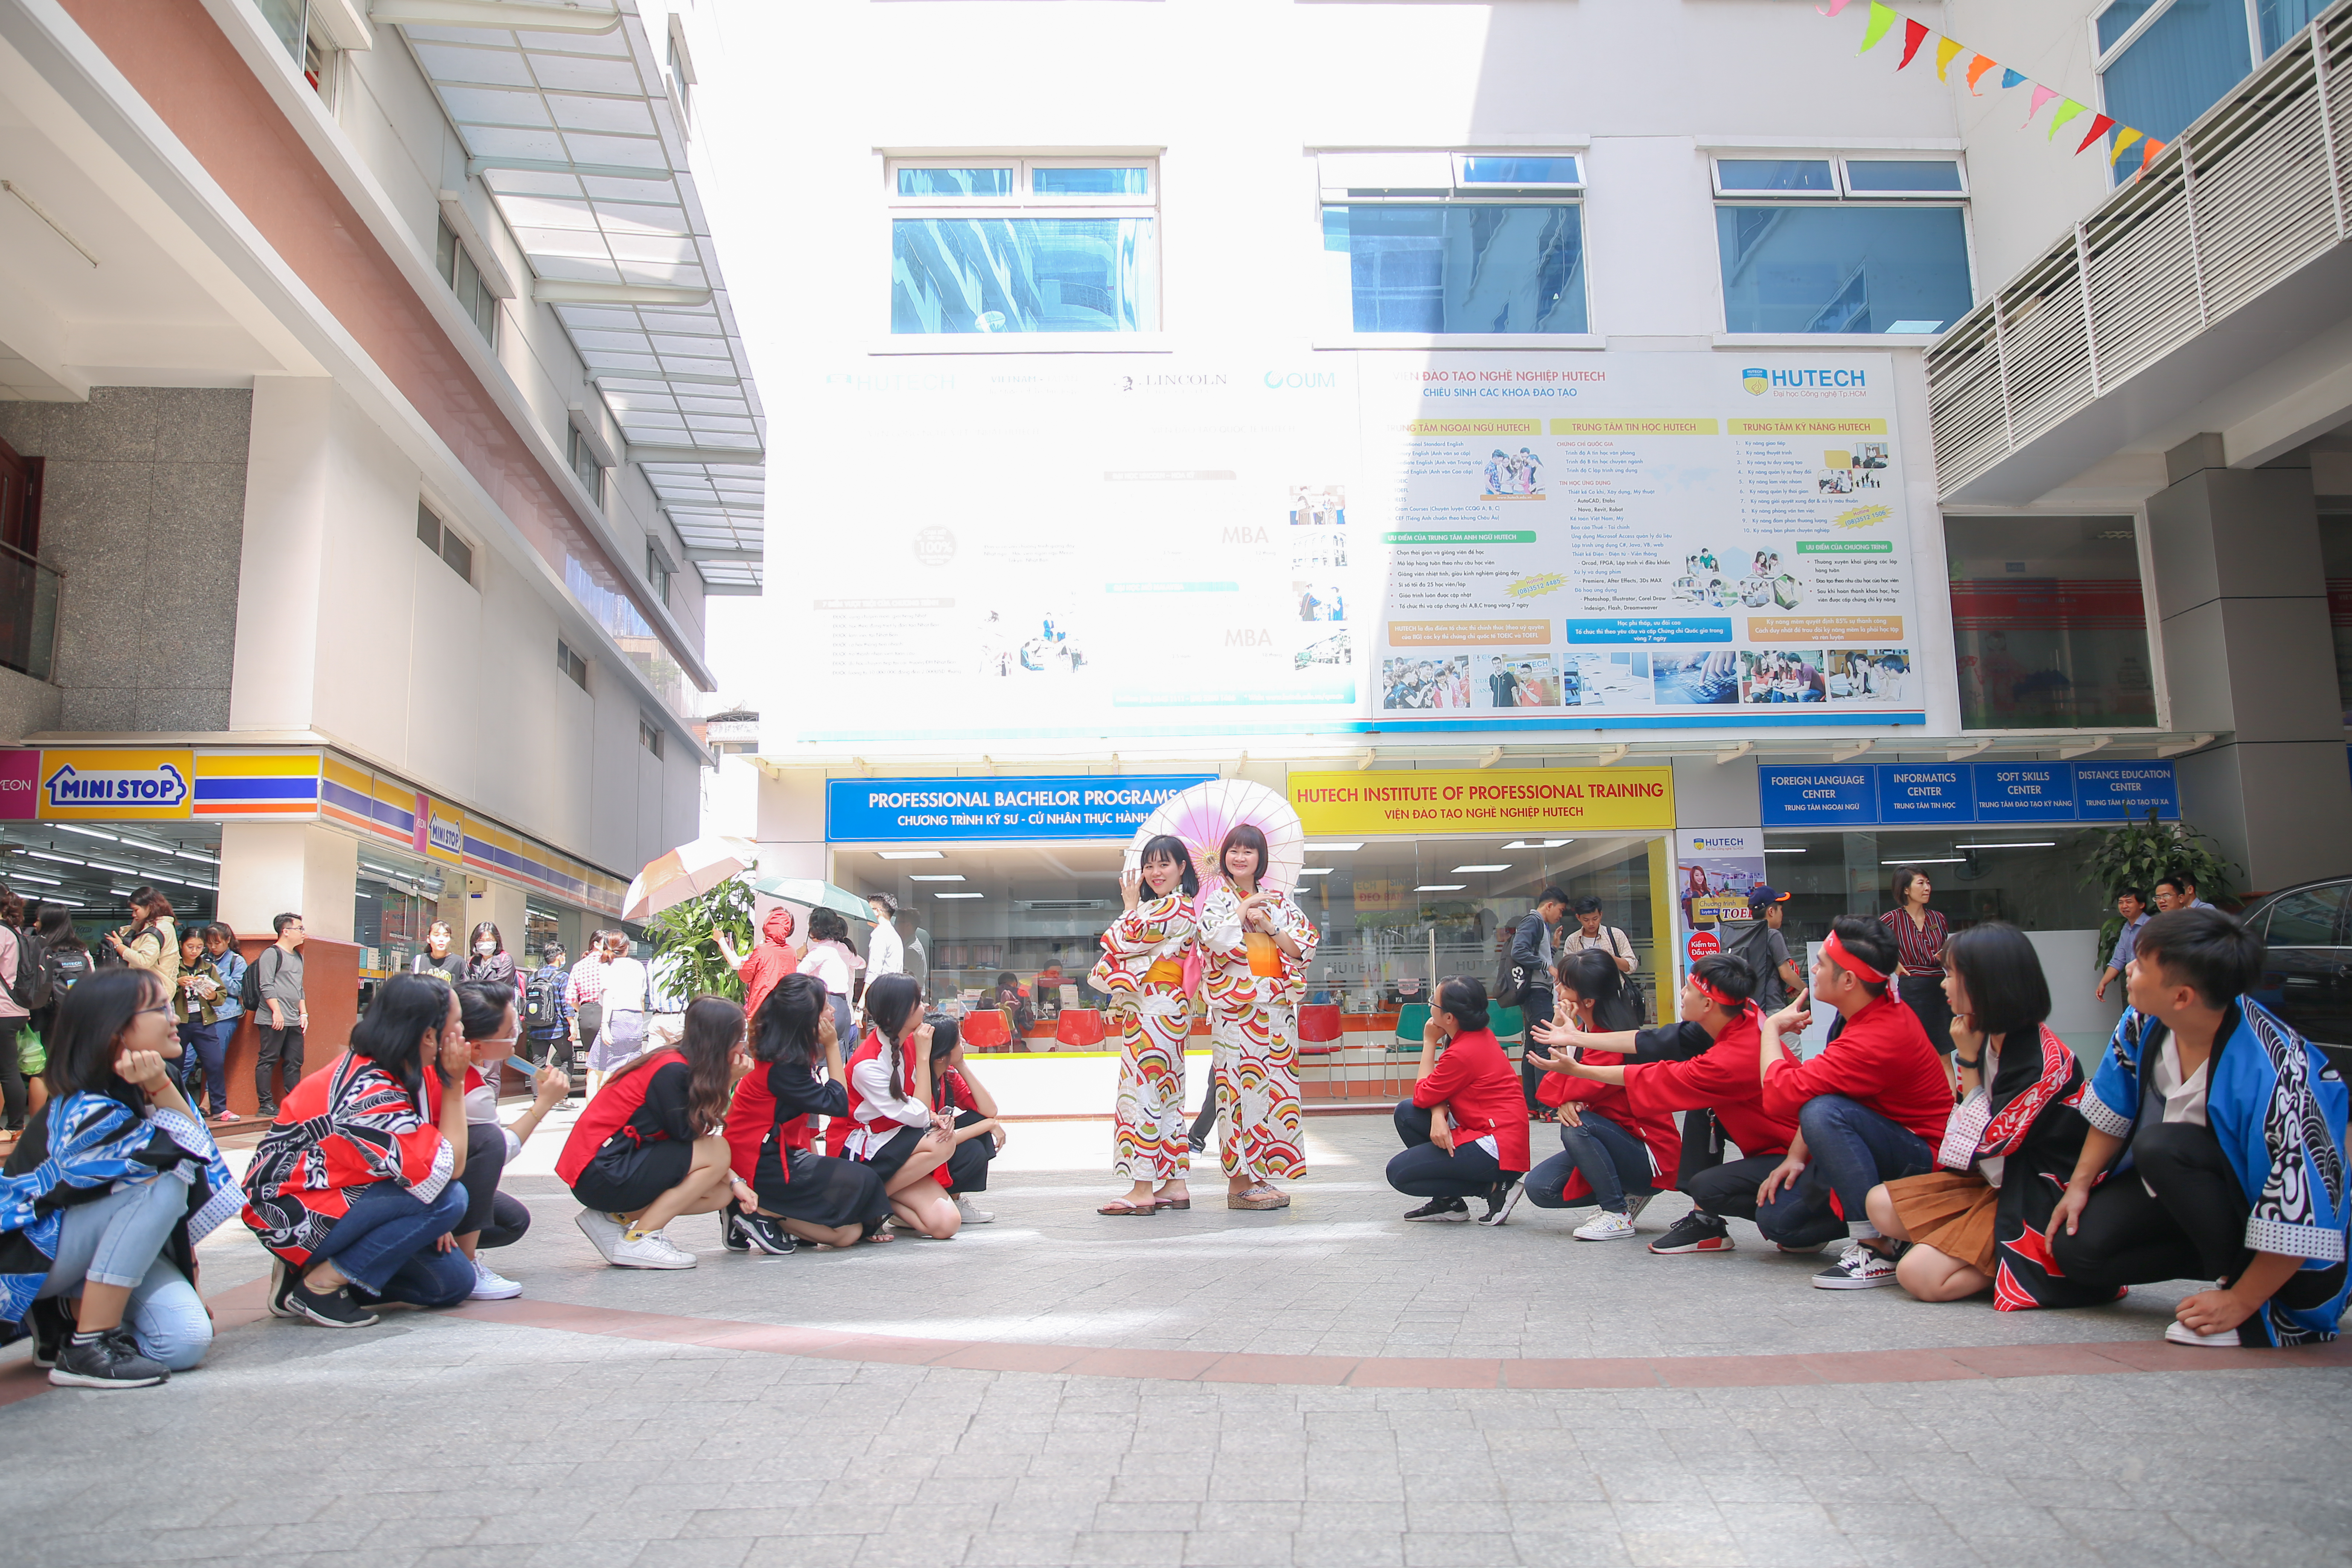 Khoa Nhật Bản học chào mừng ngày 20/11 trong trang phục truyền thống Nhật Bản 38